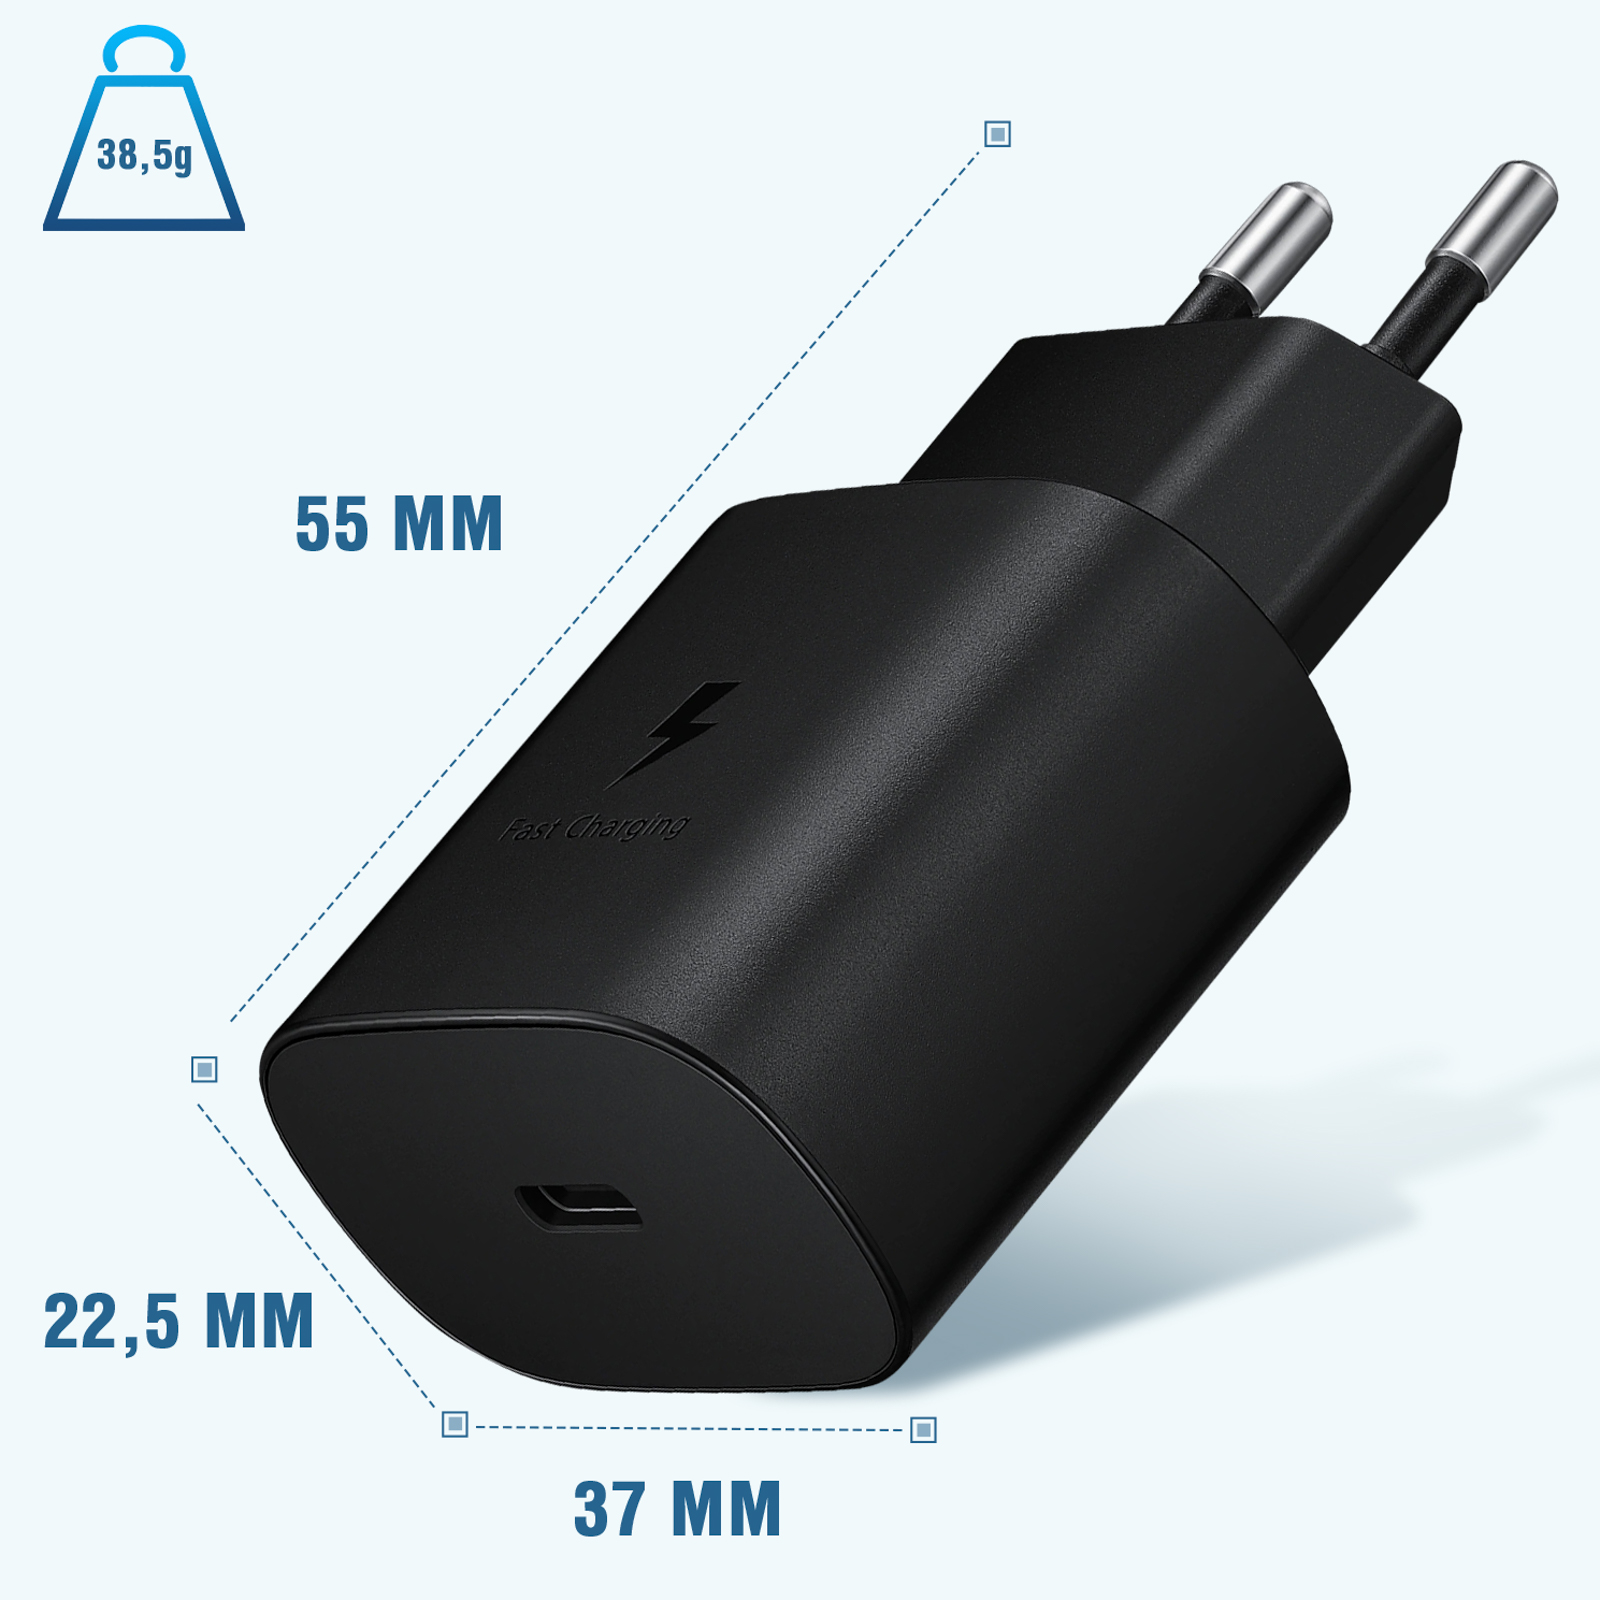 Samsung ﻿Adaptateur secteur original - Chargeur - Connexion USB-C - Charge  rapide - 15W - Noir